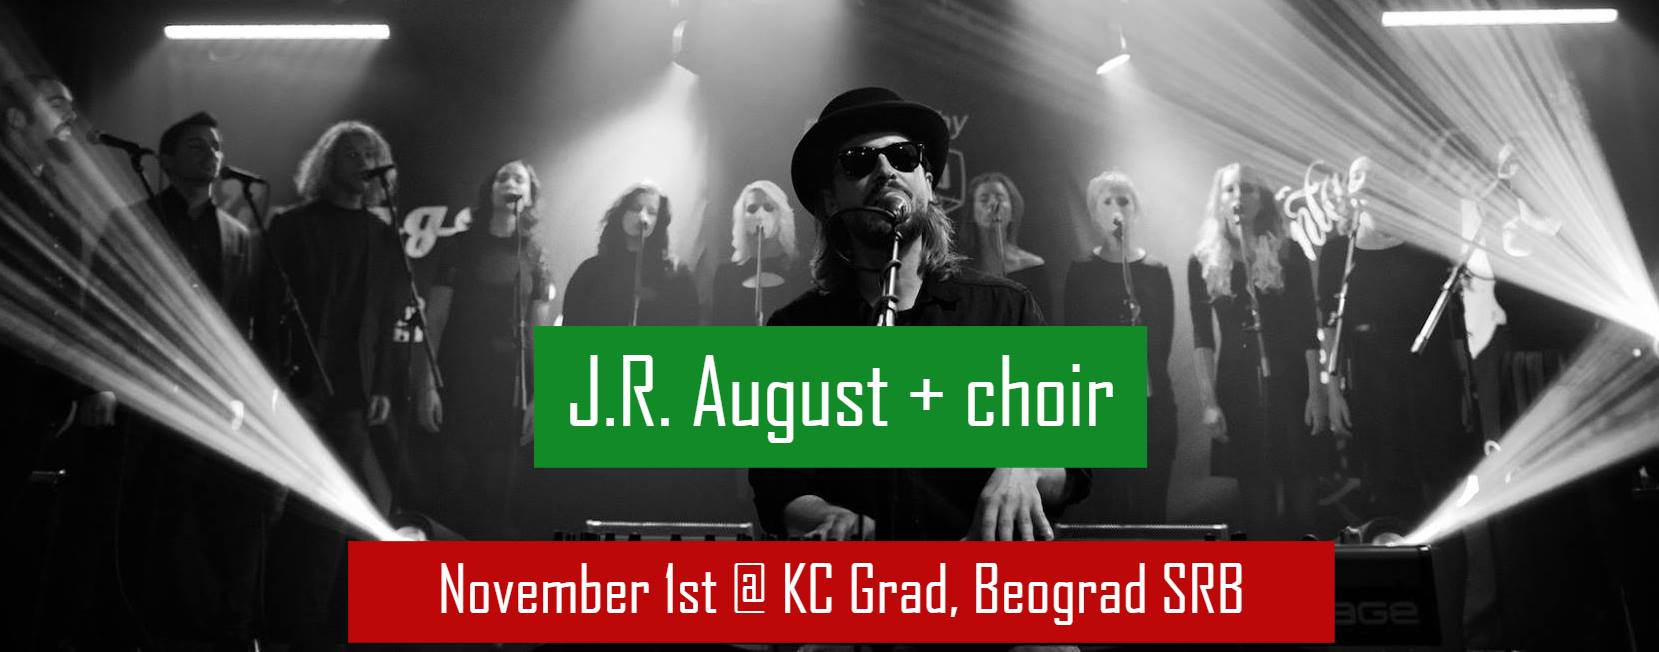 J.R. August + choir 01.11.2018. KC Grad